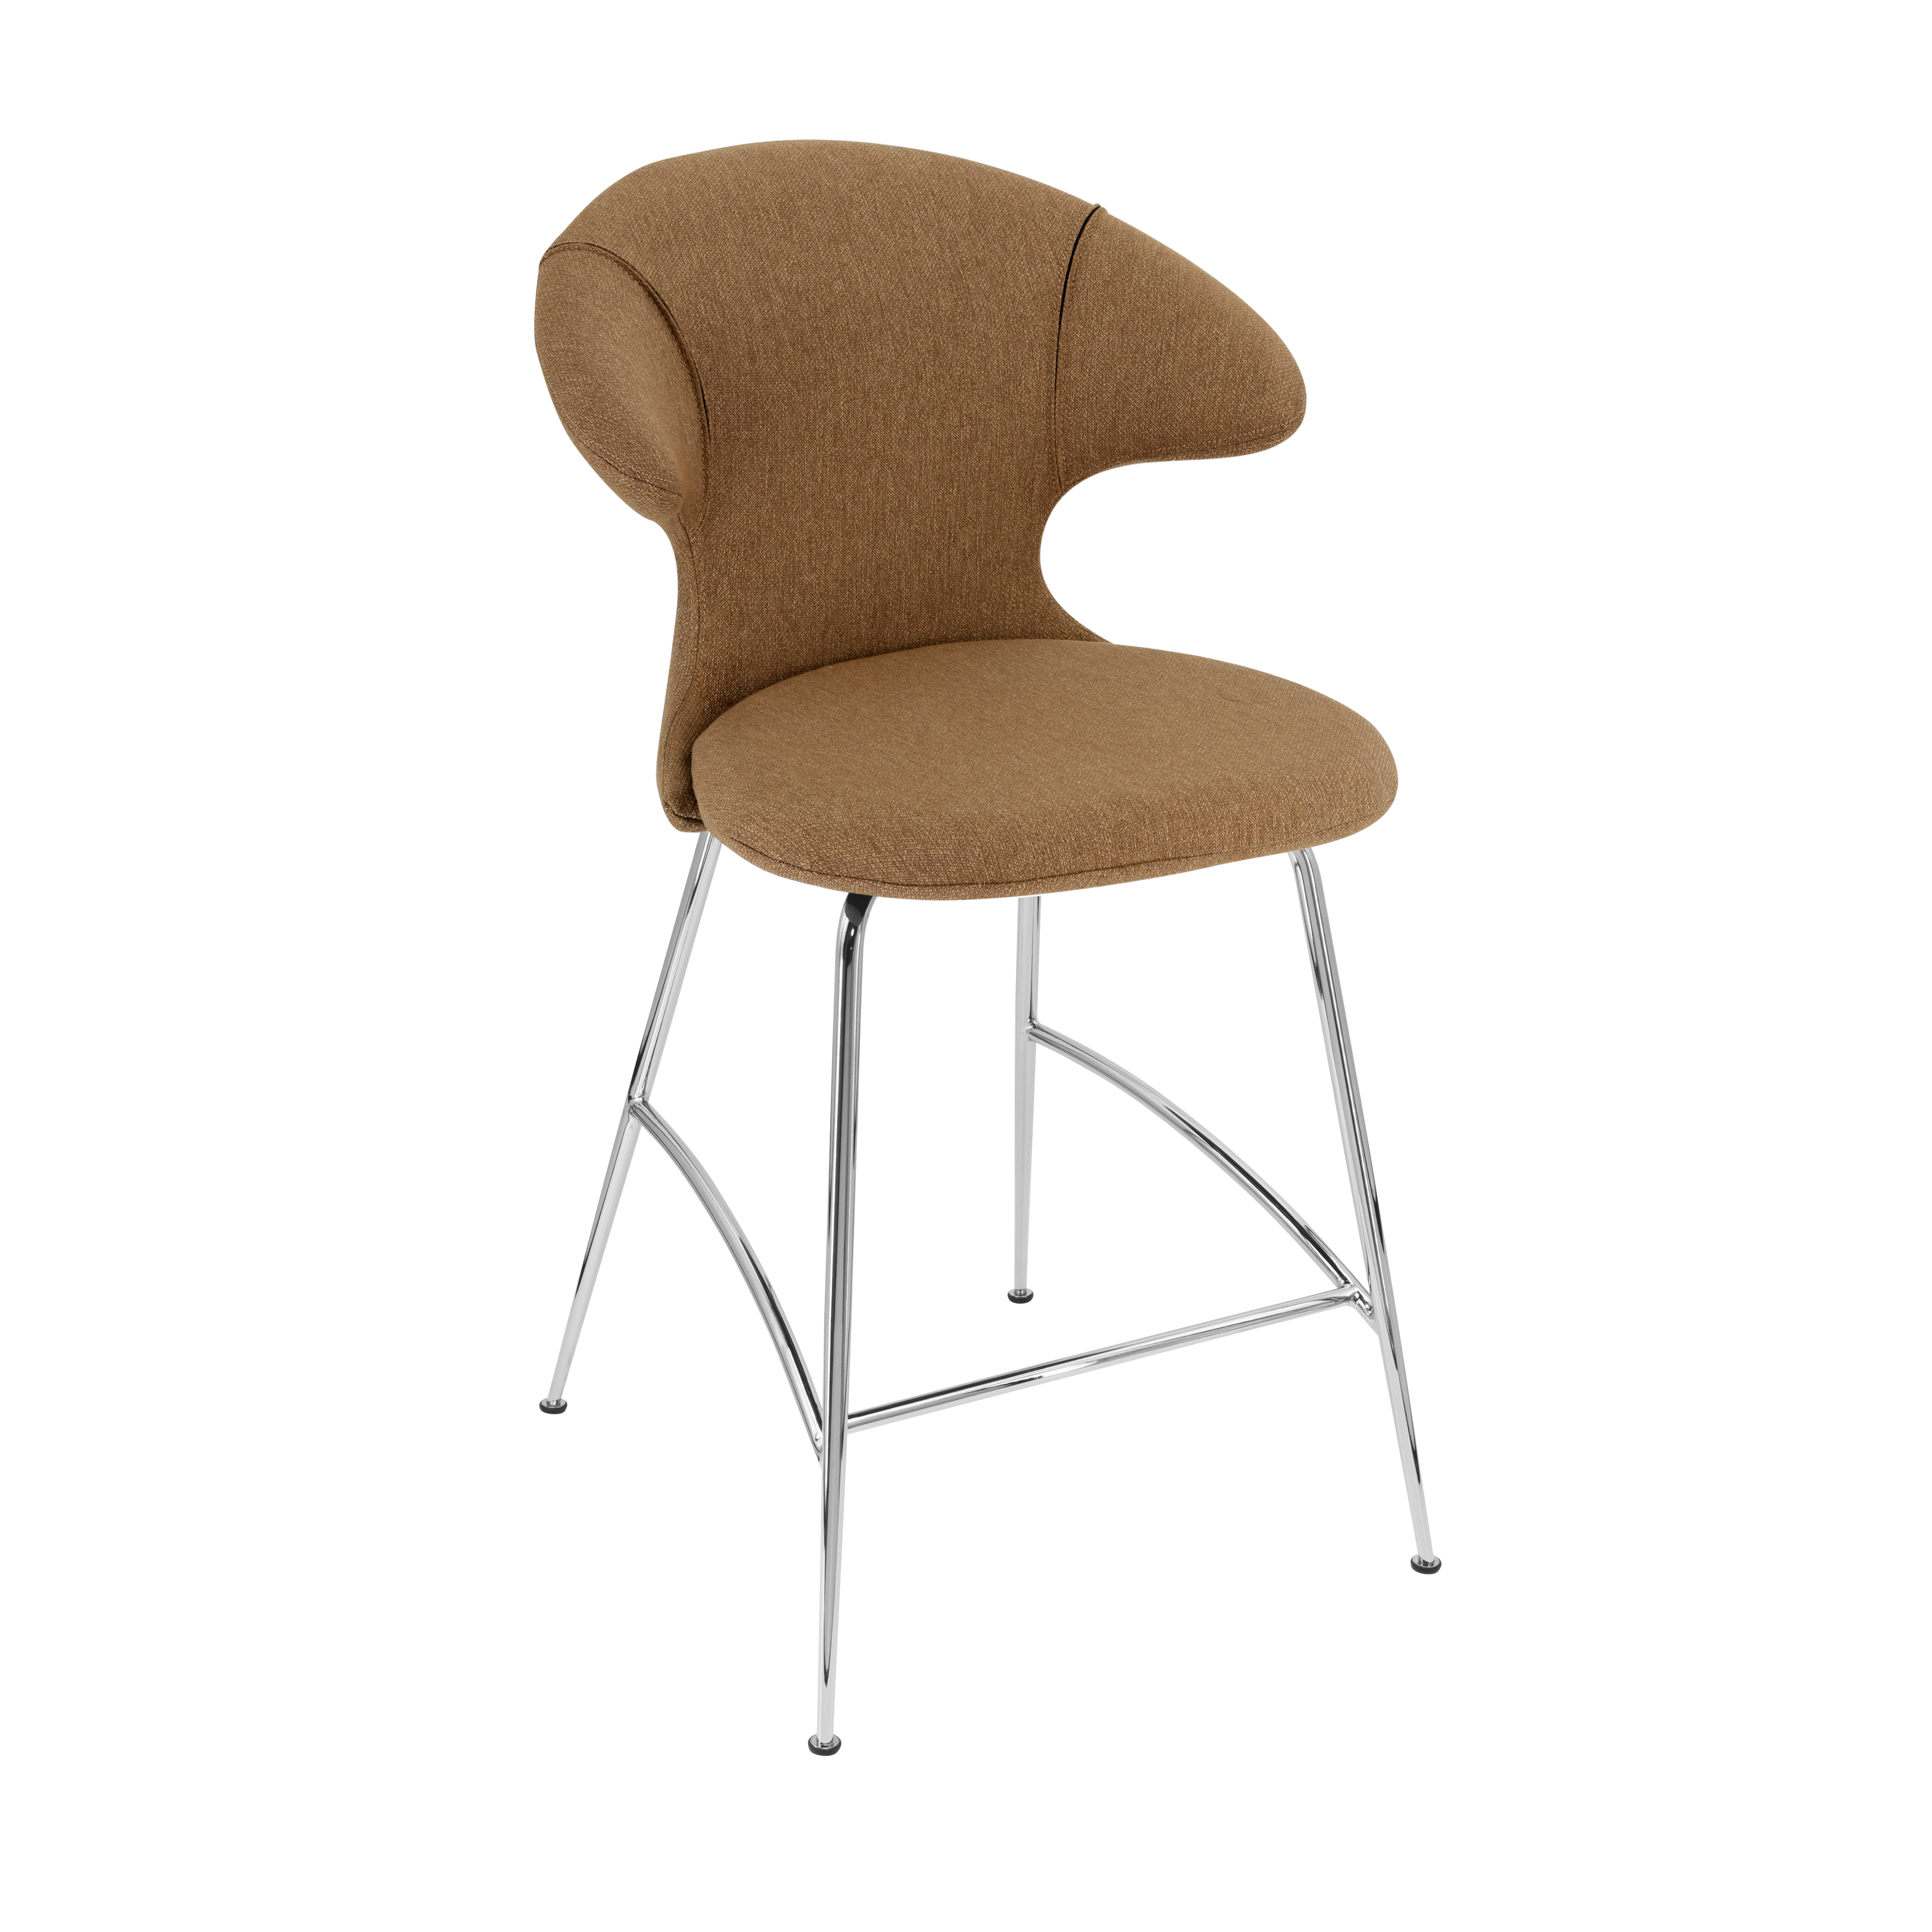 Time Flies Counter Stuhl in Sugar Brown präsentiert im Onlineshop von KAQTU Design AG. Barstuhl mit Armlehne ist von Umage